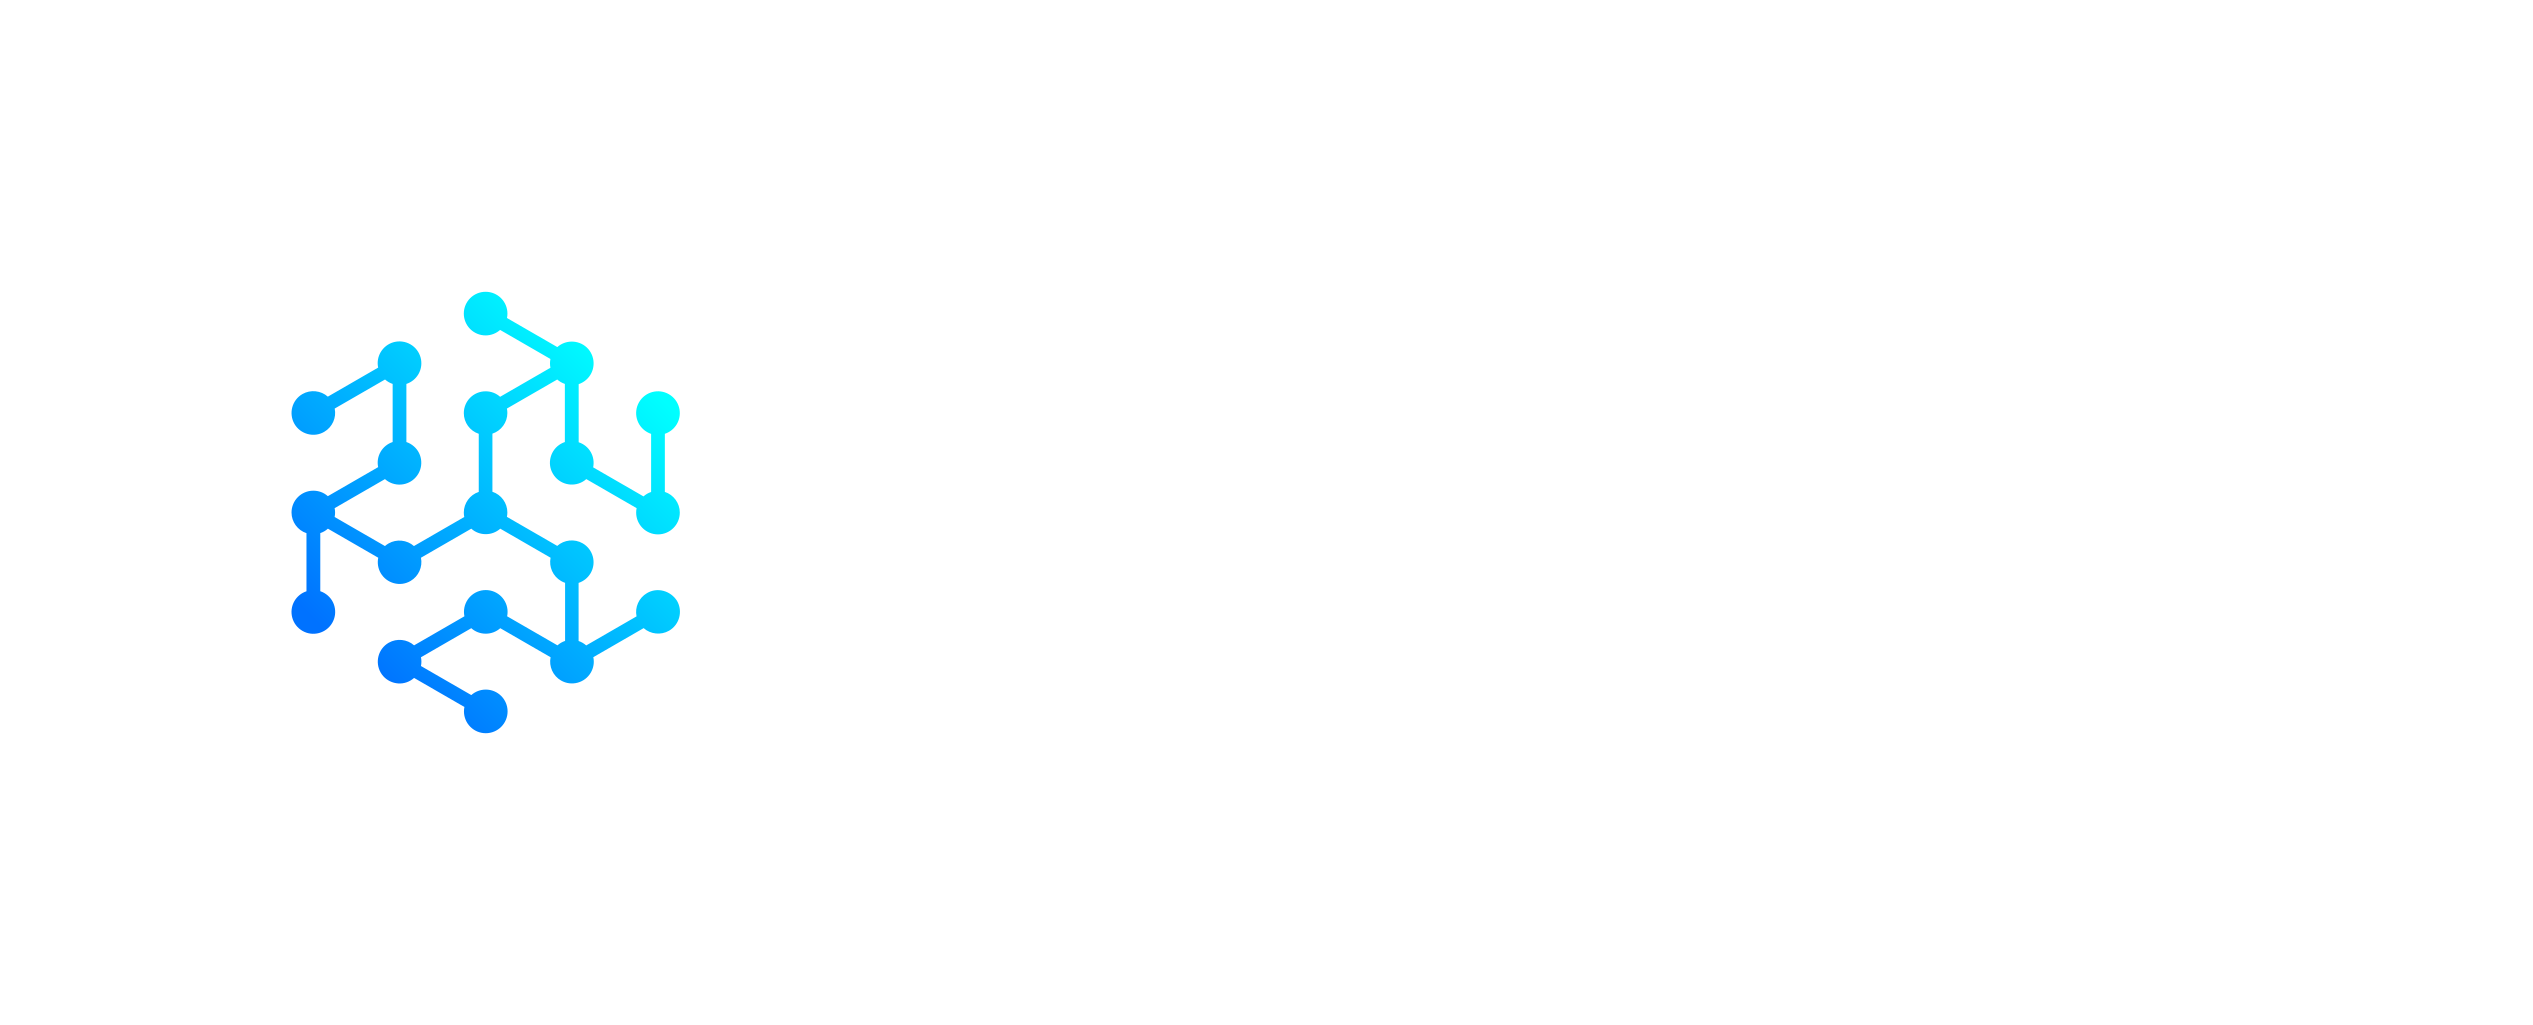 Atlas Telecom